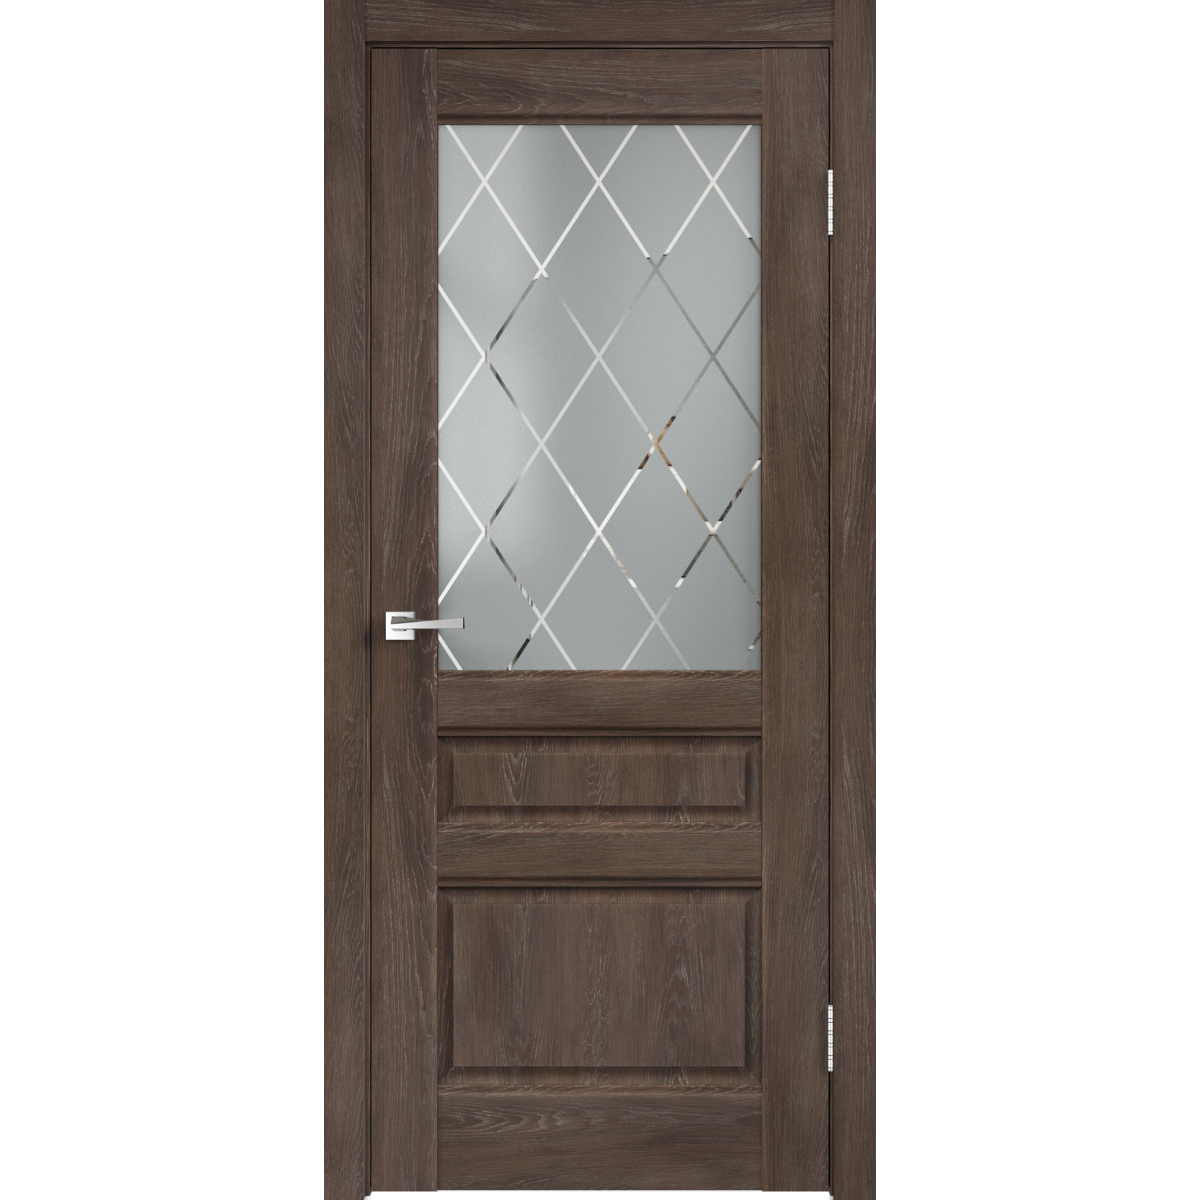 Дверь межкомнатная остеклённая «Летиция» 60x200 см, ПВХ, цвет дуб корица, с фурнитурой